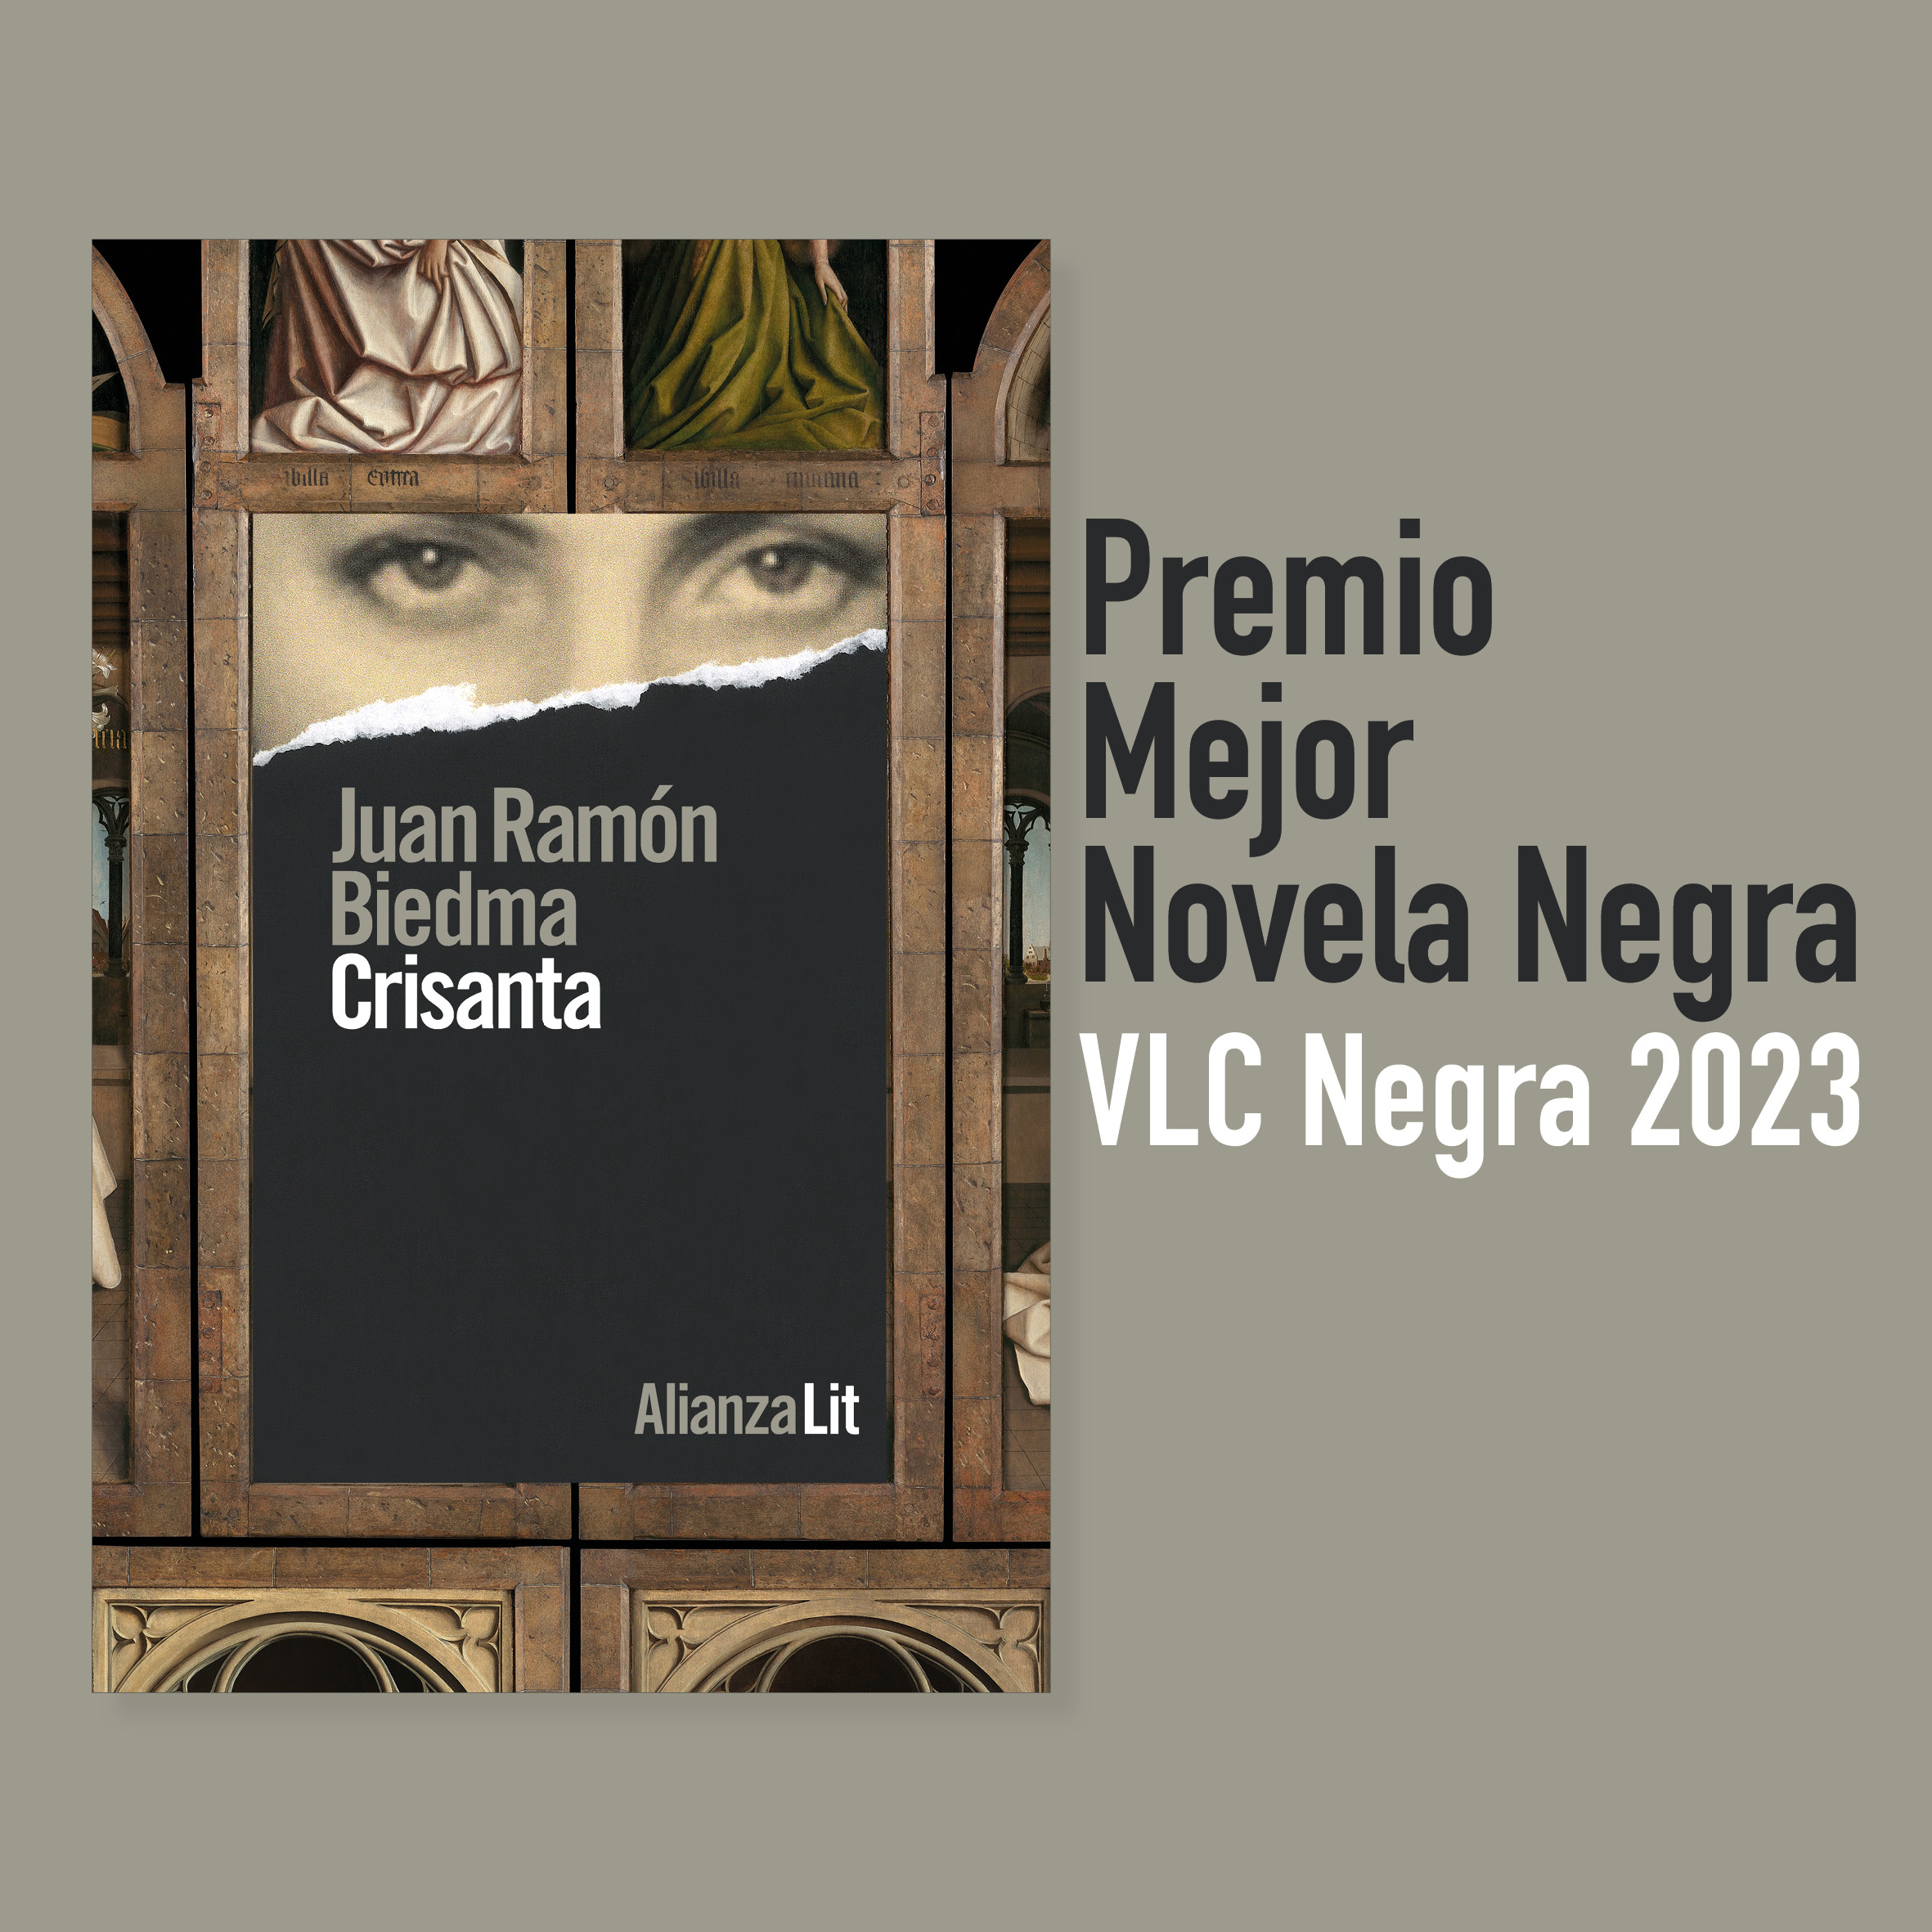 <em><strong>Crisanta</strong></em><strong>, de Juan Ramón Biedma, gana el premio a la Mejor Novela Negra del Festival Valencia Negra</strong>